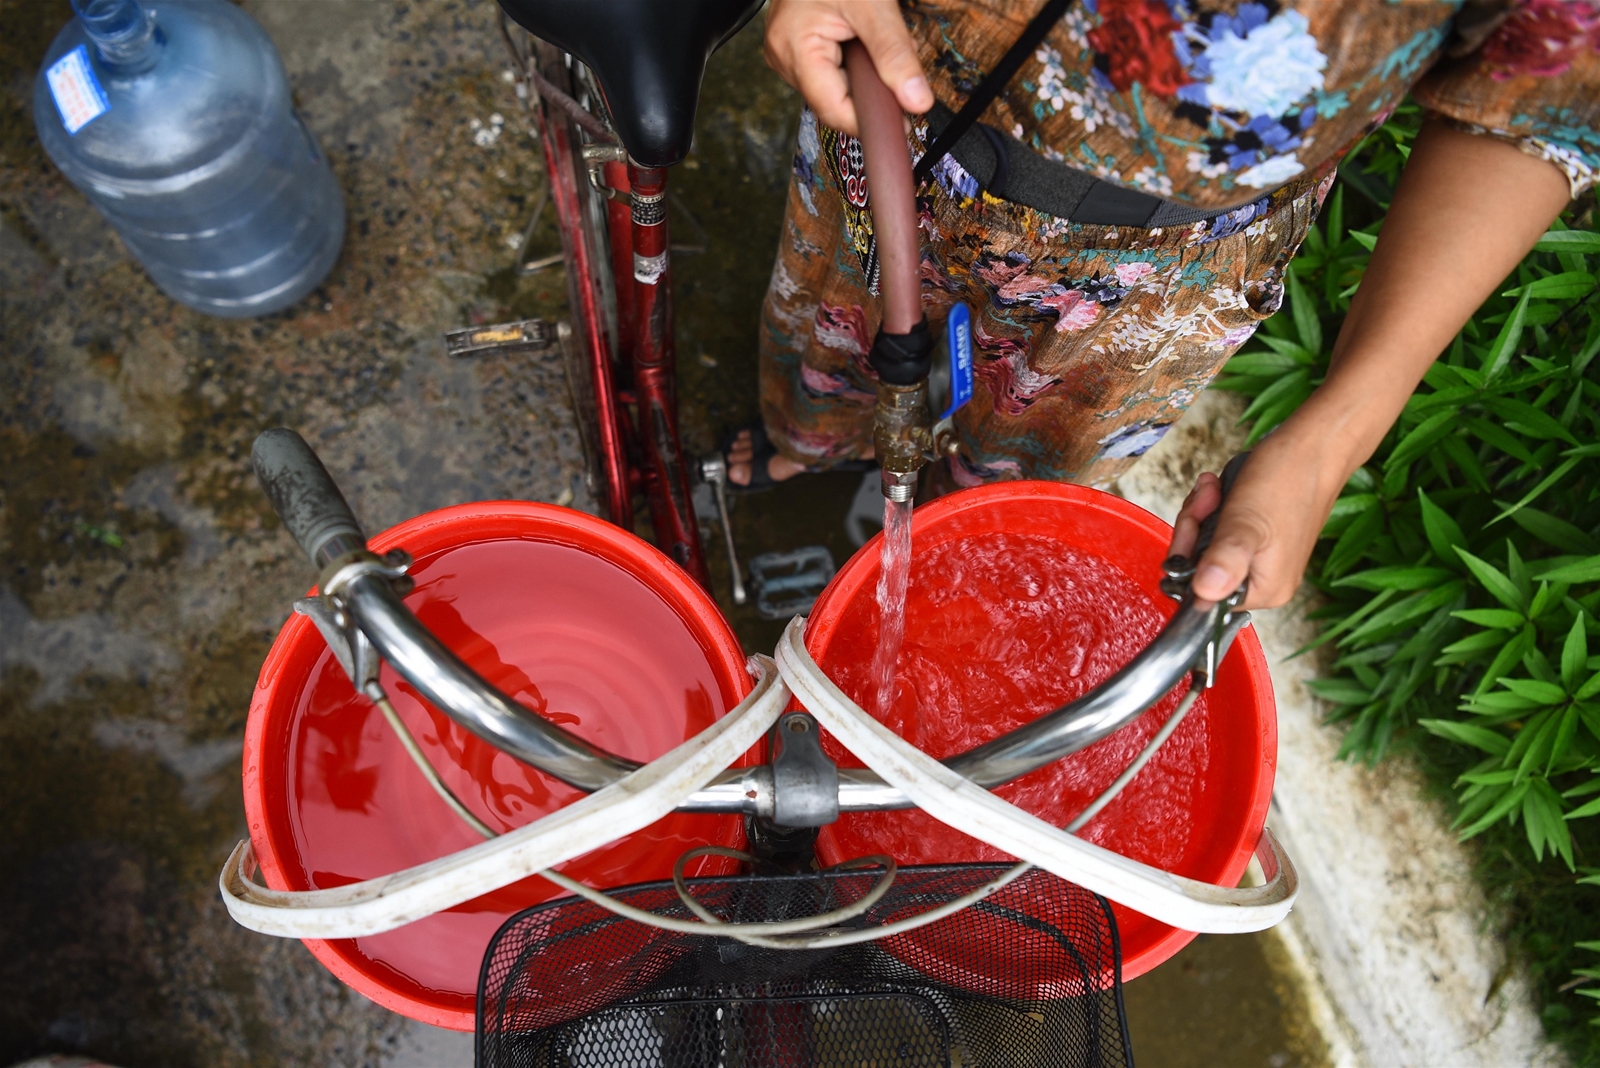 Kinh doanh nước sạch: Càng độc quyền, rủi ro càng cao